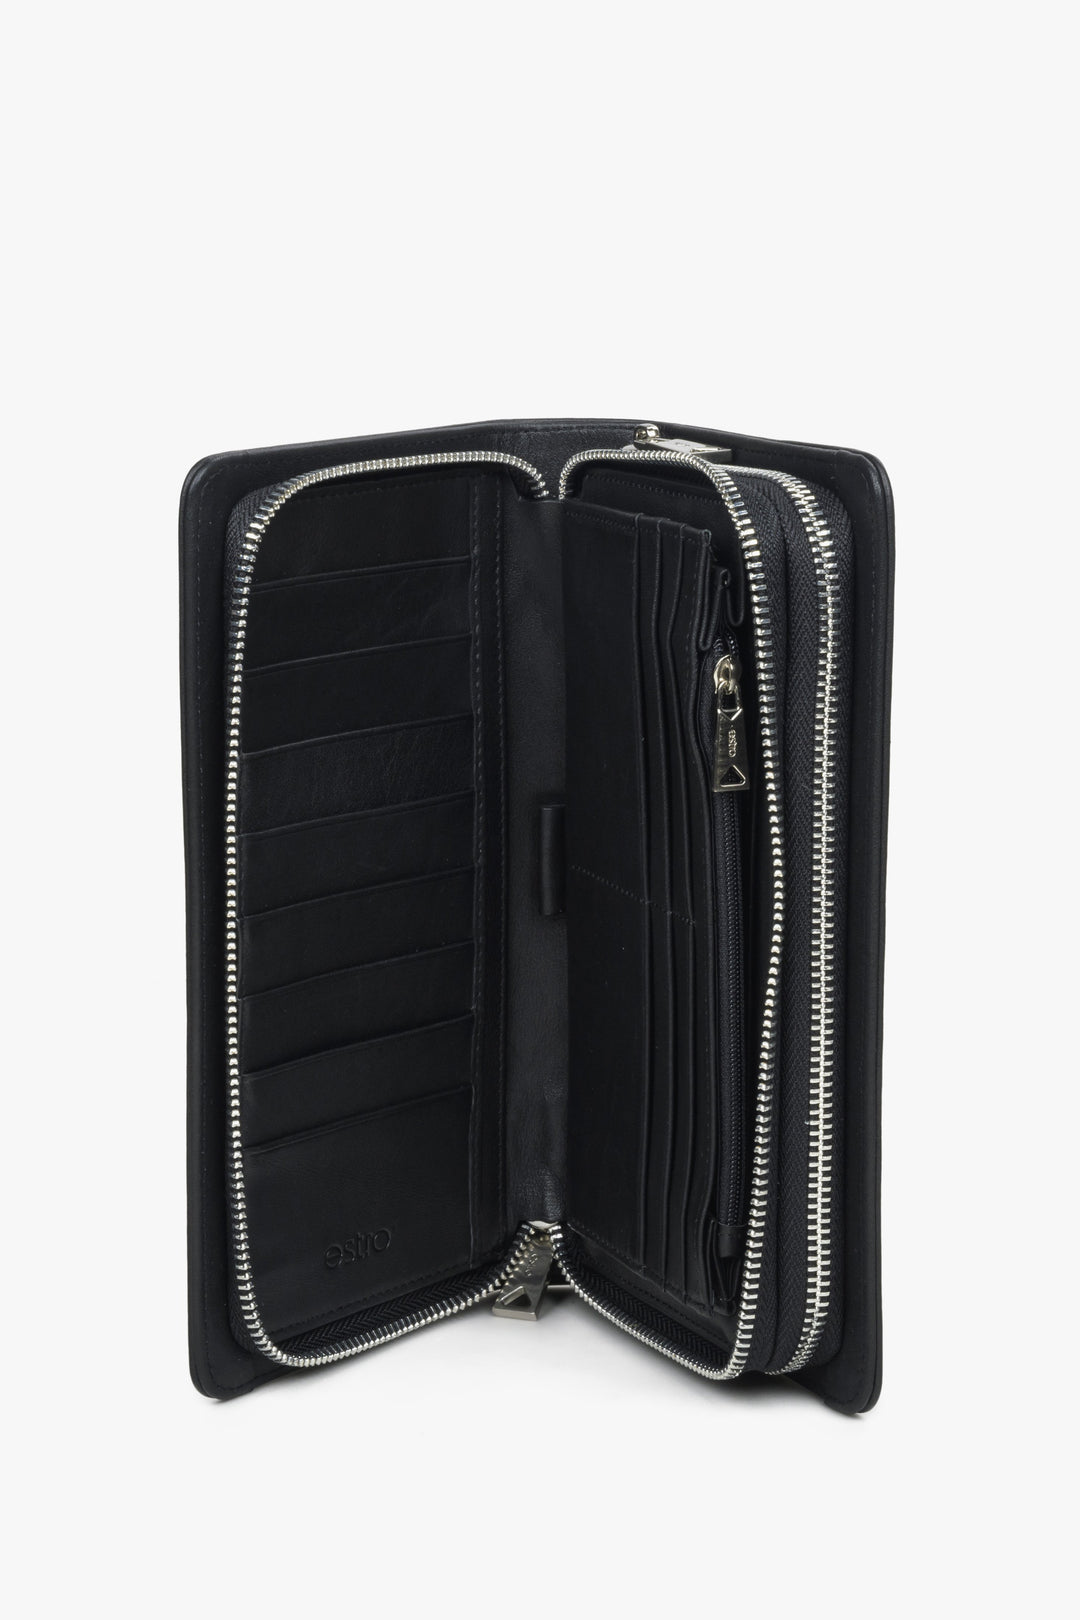 Estro spacious men's leather coin purse - interior.